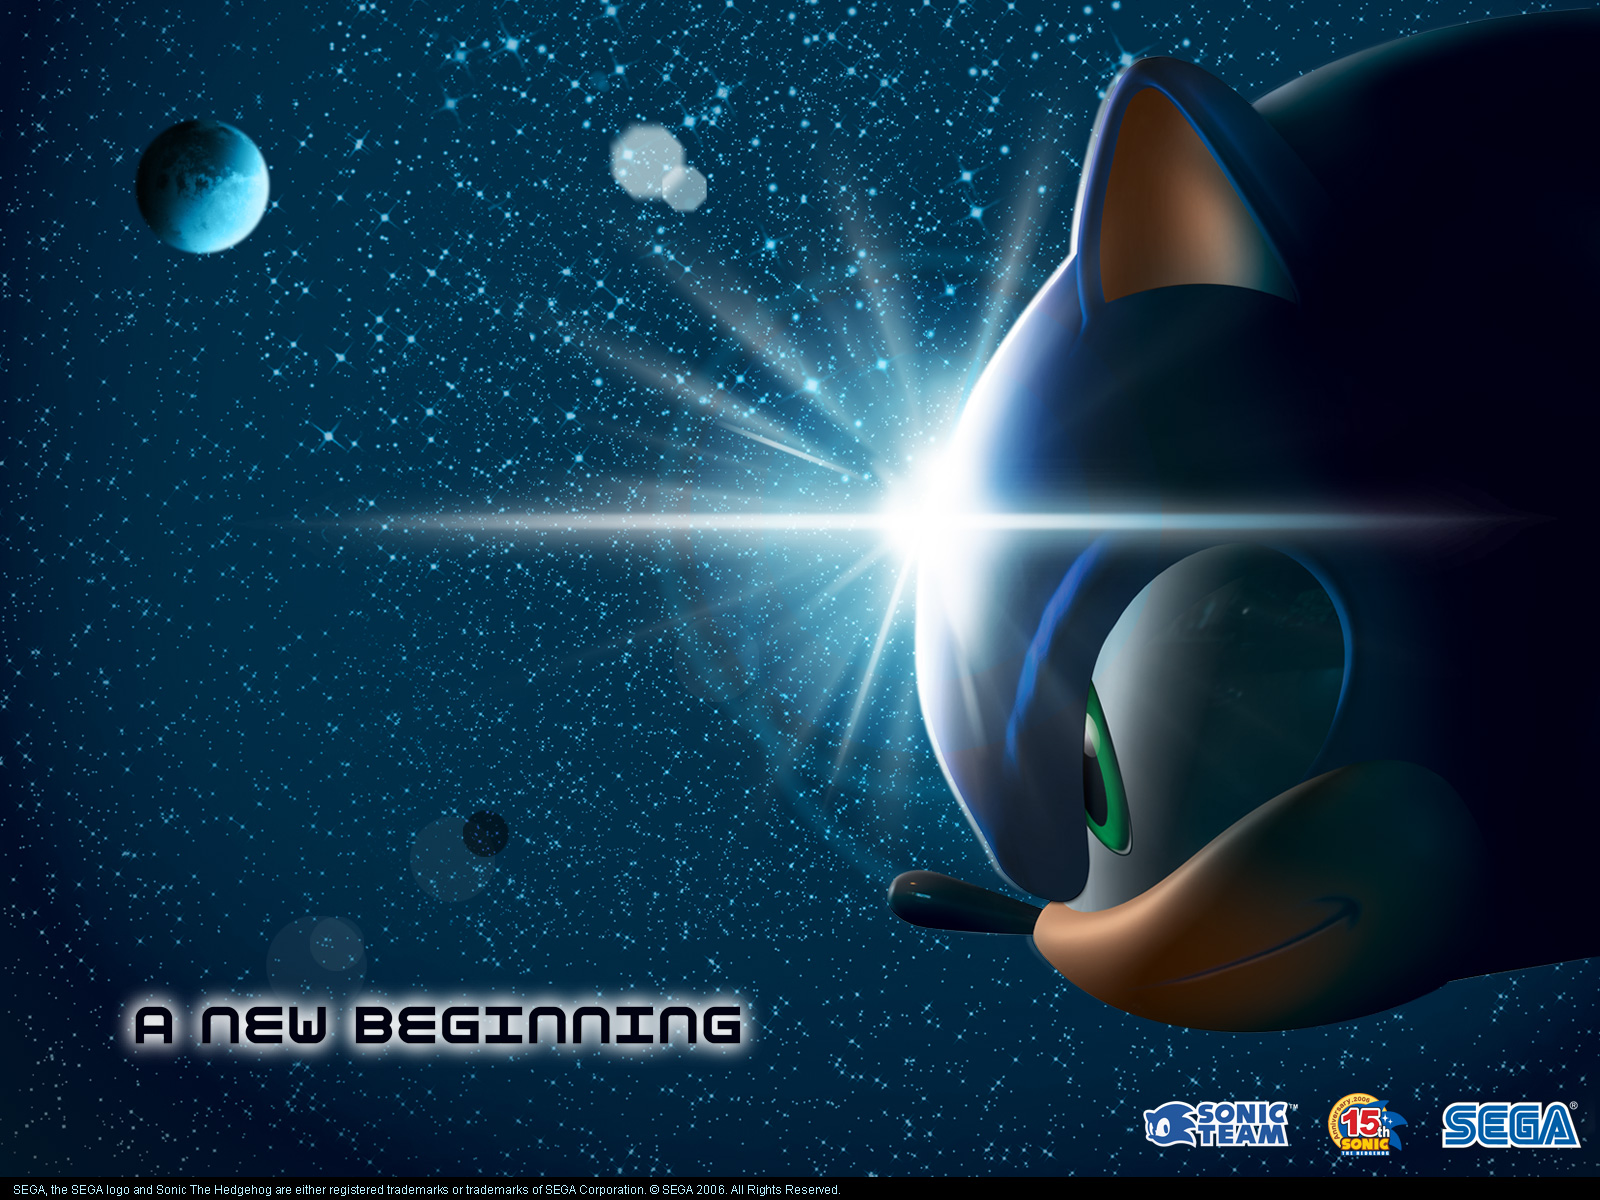 Fond d'ecran Sonic Beginning